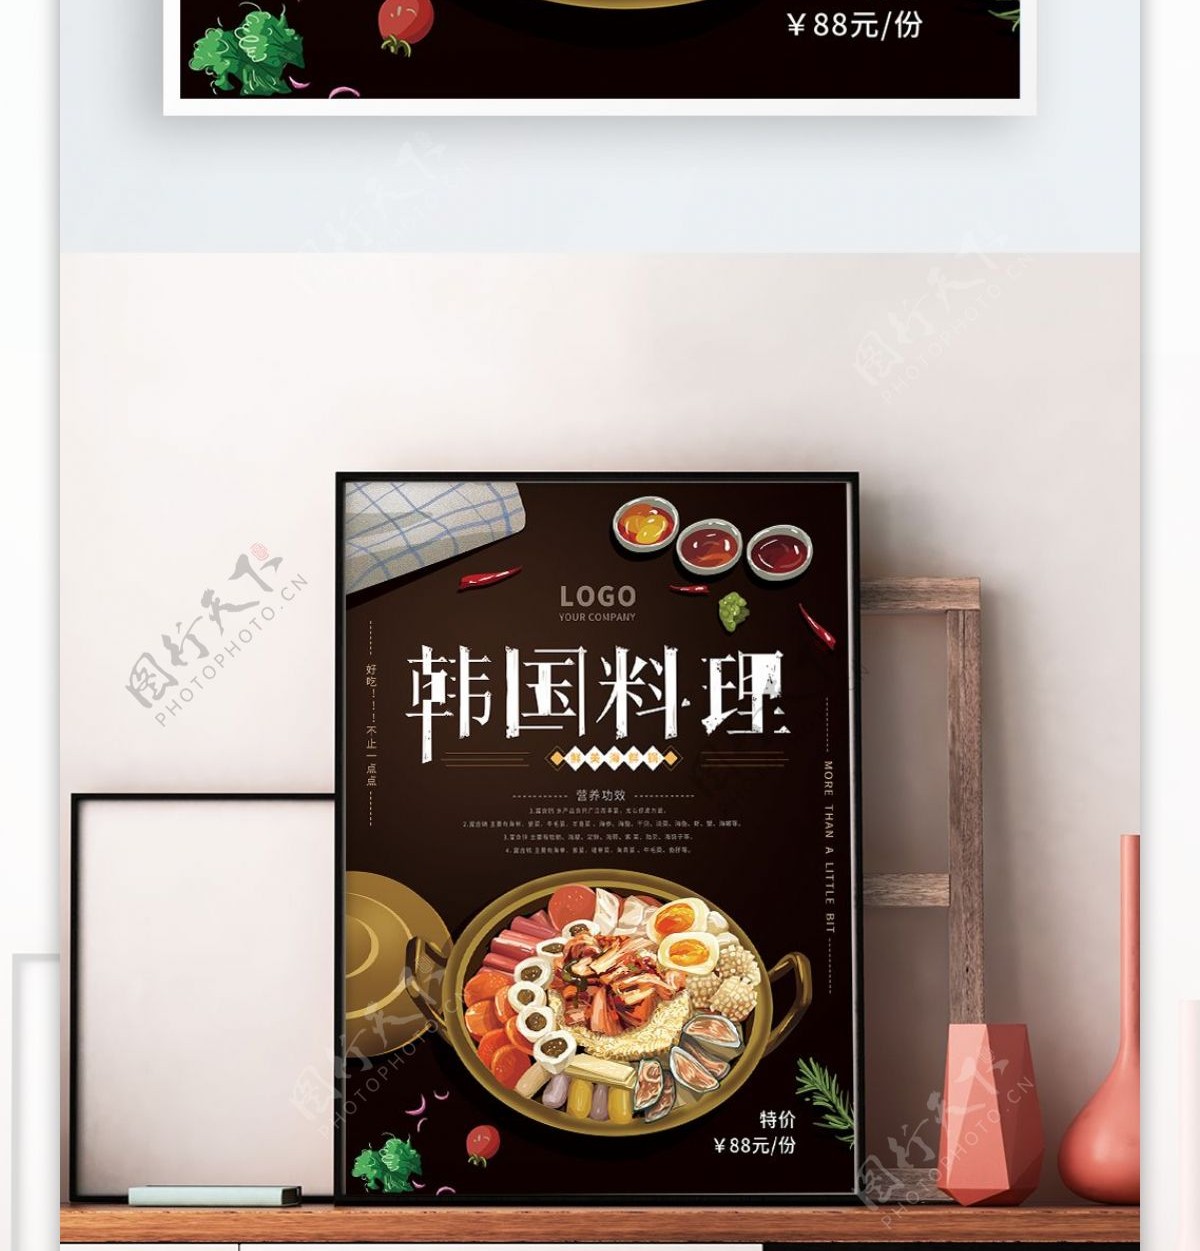 原创手绘韩国料理海鲜锅海报